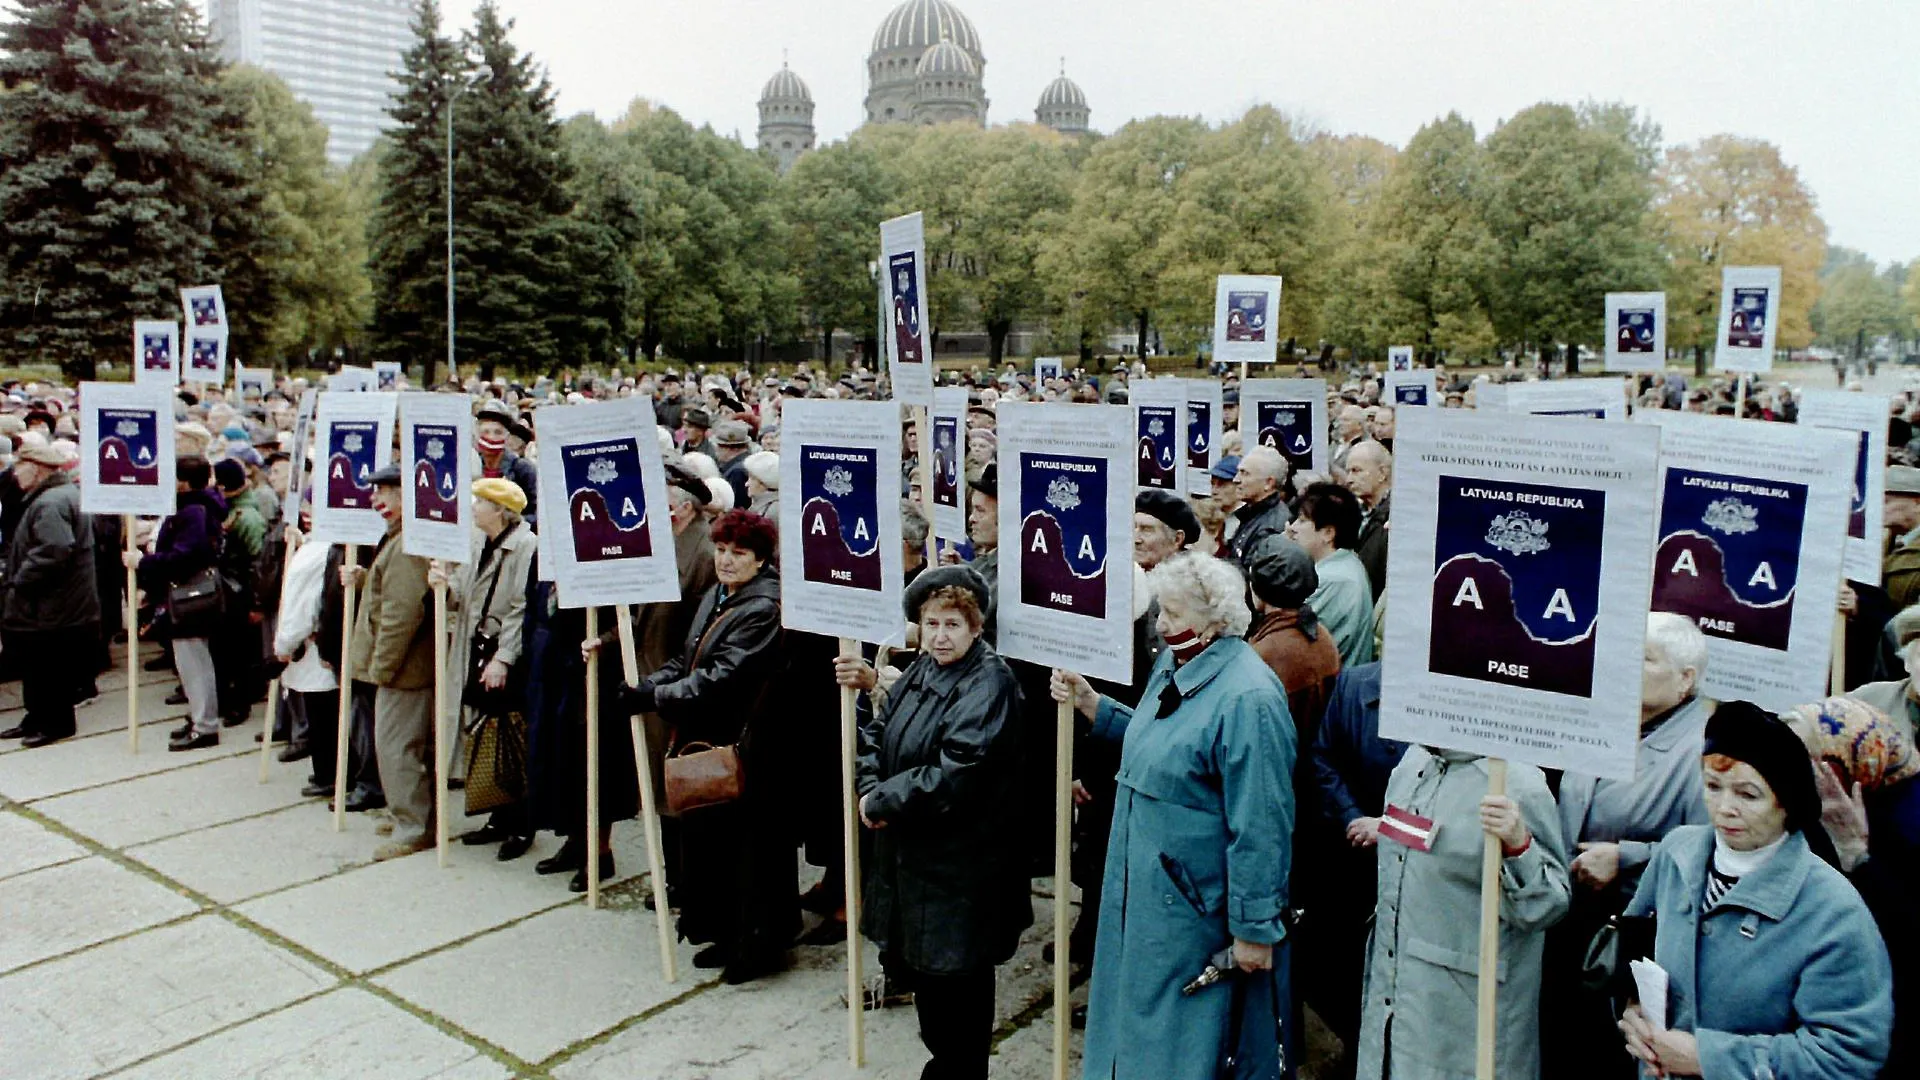 Митинг в Риге. Жители Латвии против паспортов неграждан, введенных в 1991 году и разделяющих население на граждан и неграждан, октябрь 2001 года / Victor Lisitsyn